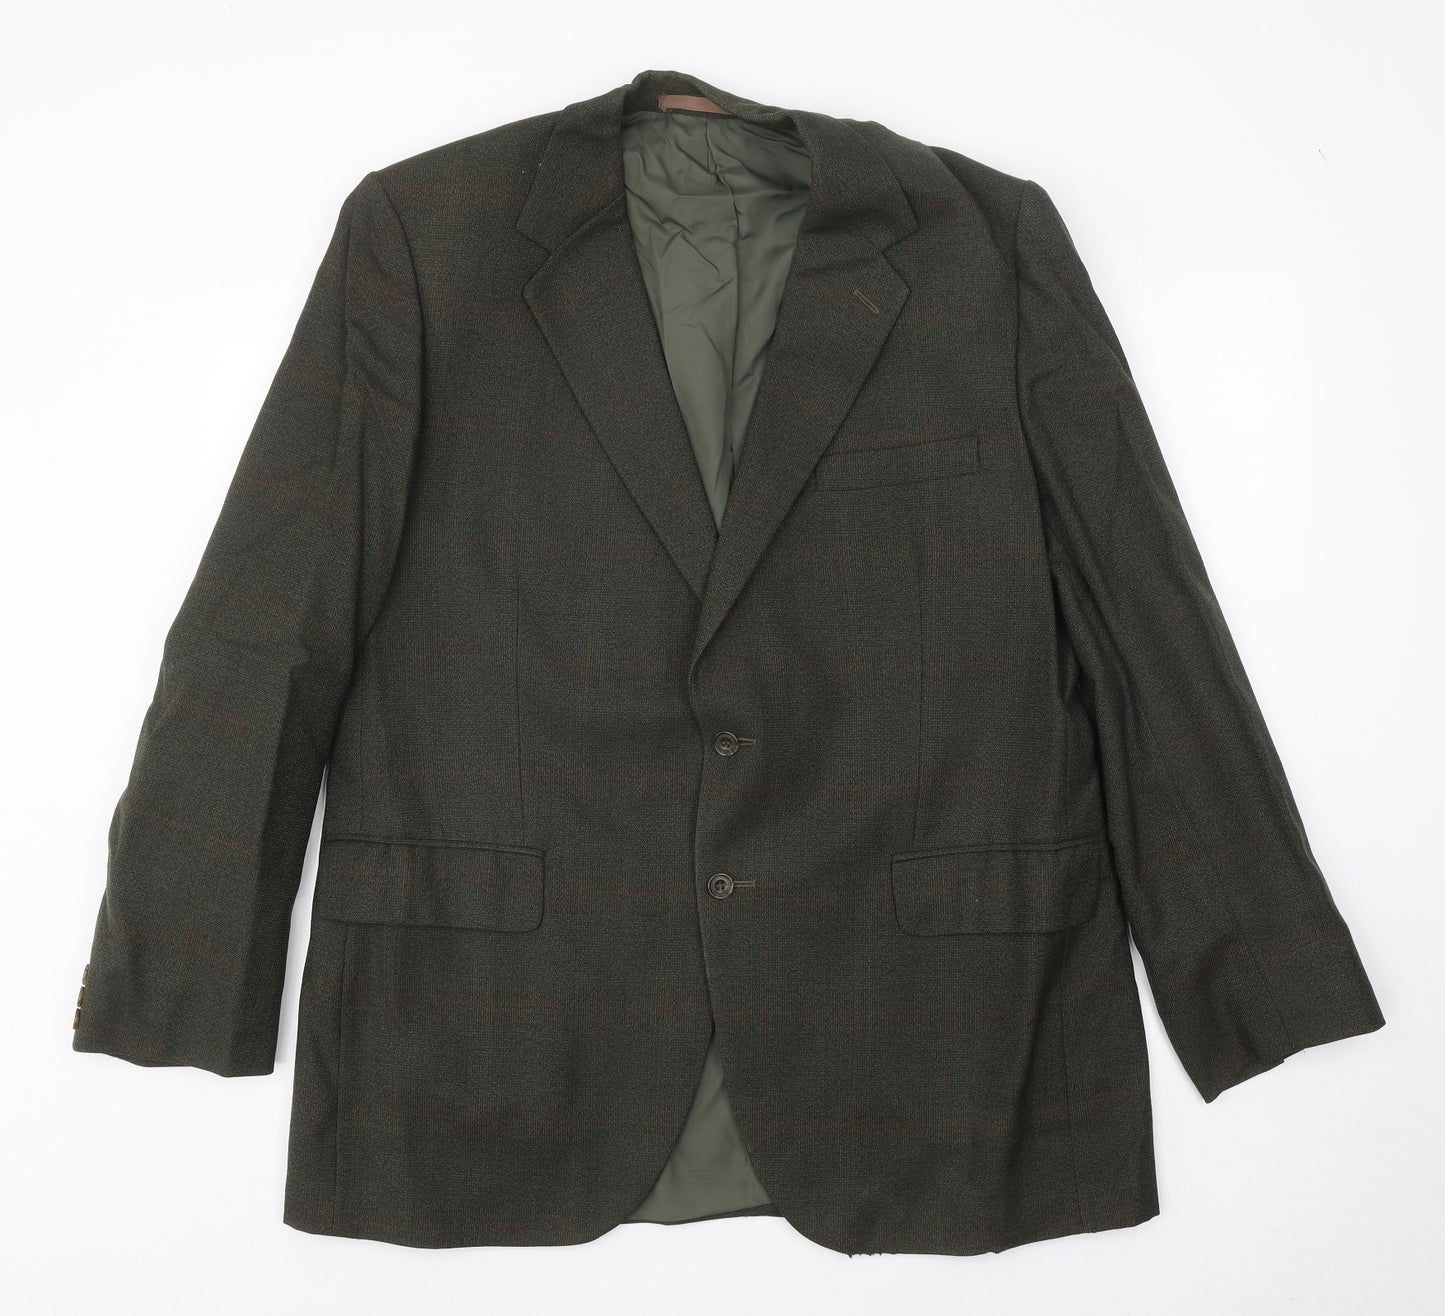 Dunn & Co Mens Green Check Wool Jacket Blazer Size 42 Regular